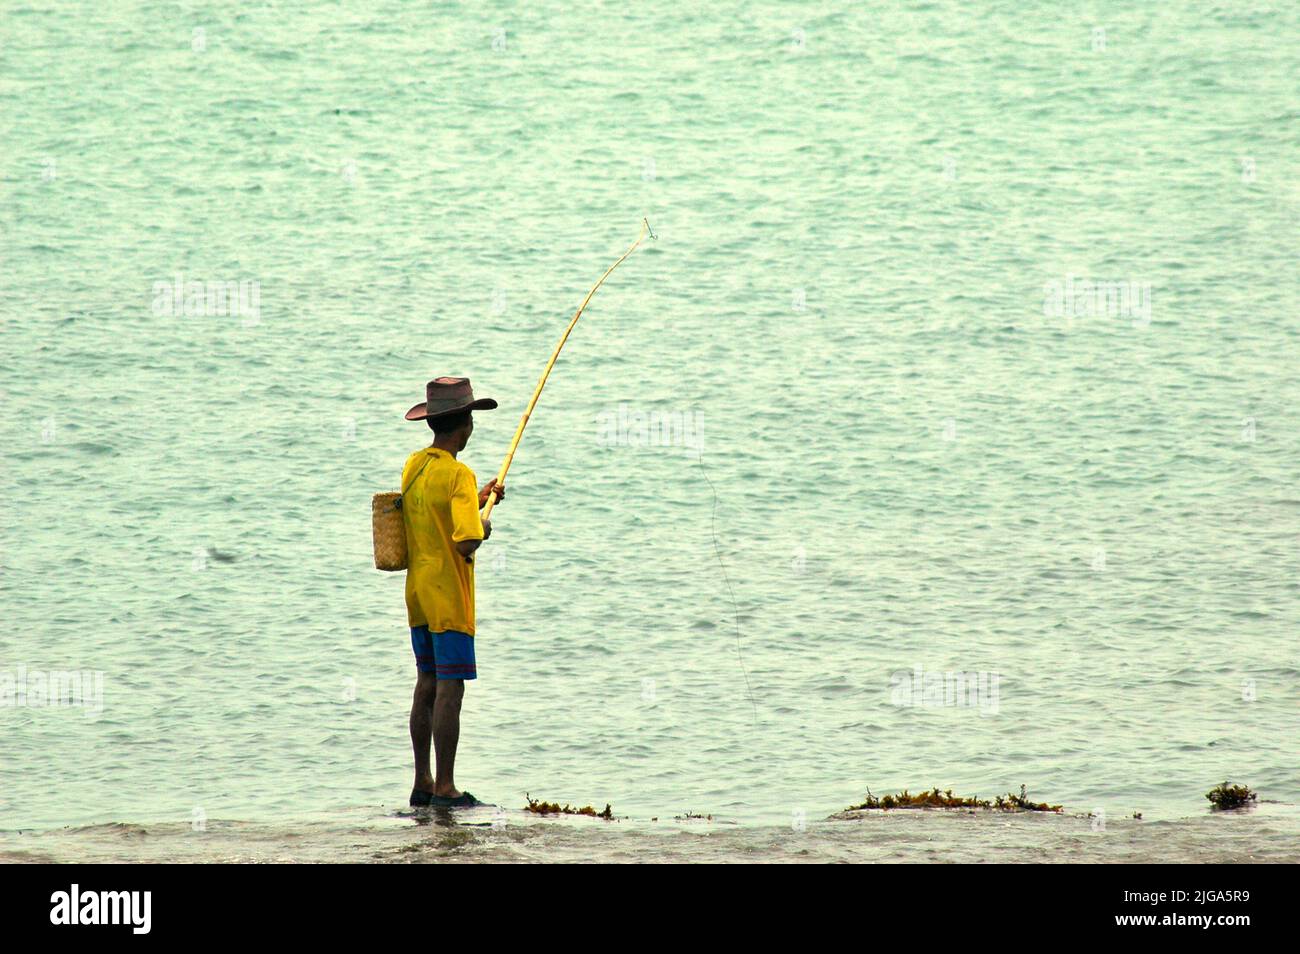 Un homme portant un chapeau de cow-boy pêche alors qu'il est debout sur des eaux peu profondes sur une plage plate et rocheuse face au détroit de Sunda à Cikoneng, Anyer, Serang, Banten, Indonésie. Banque D'Images